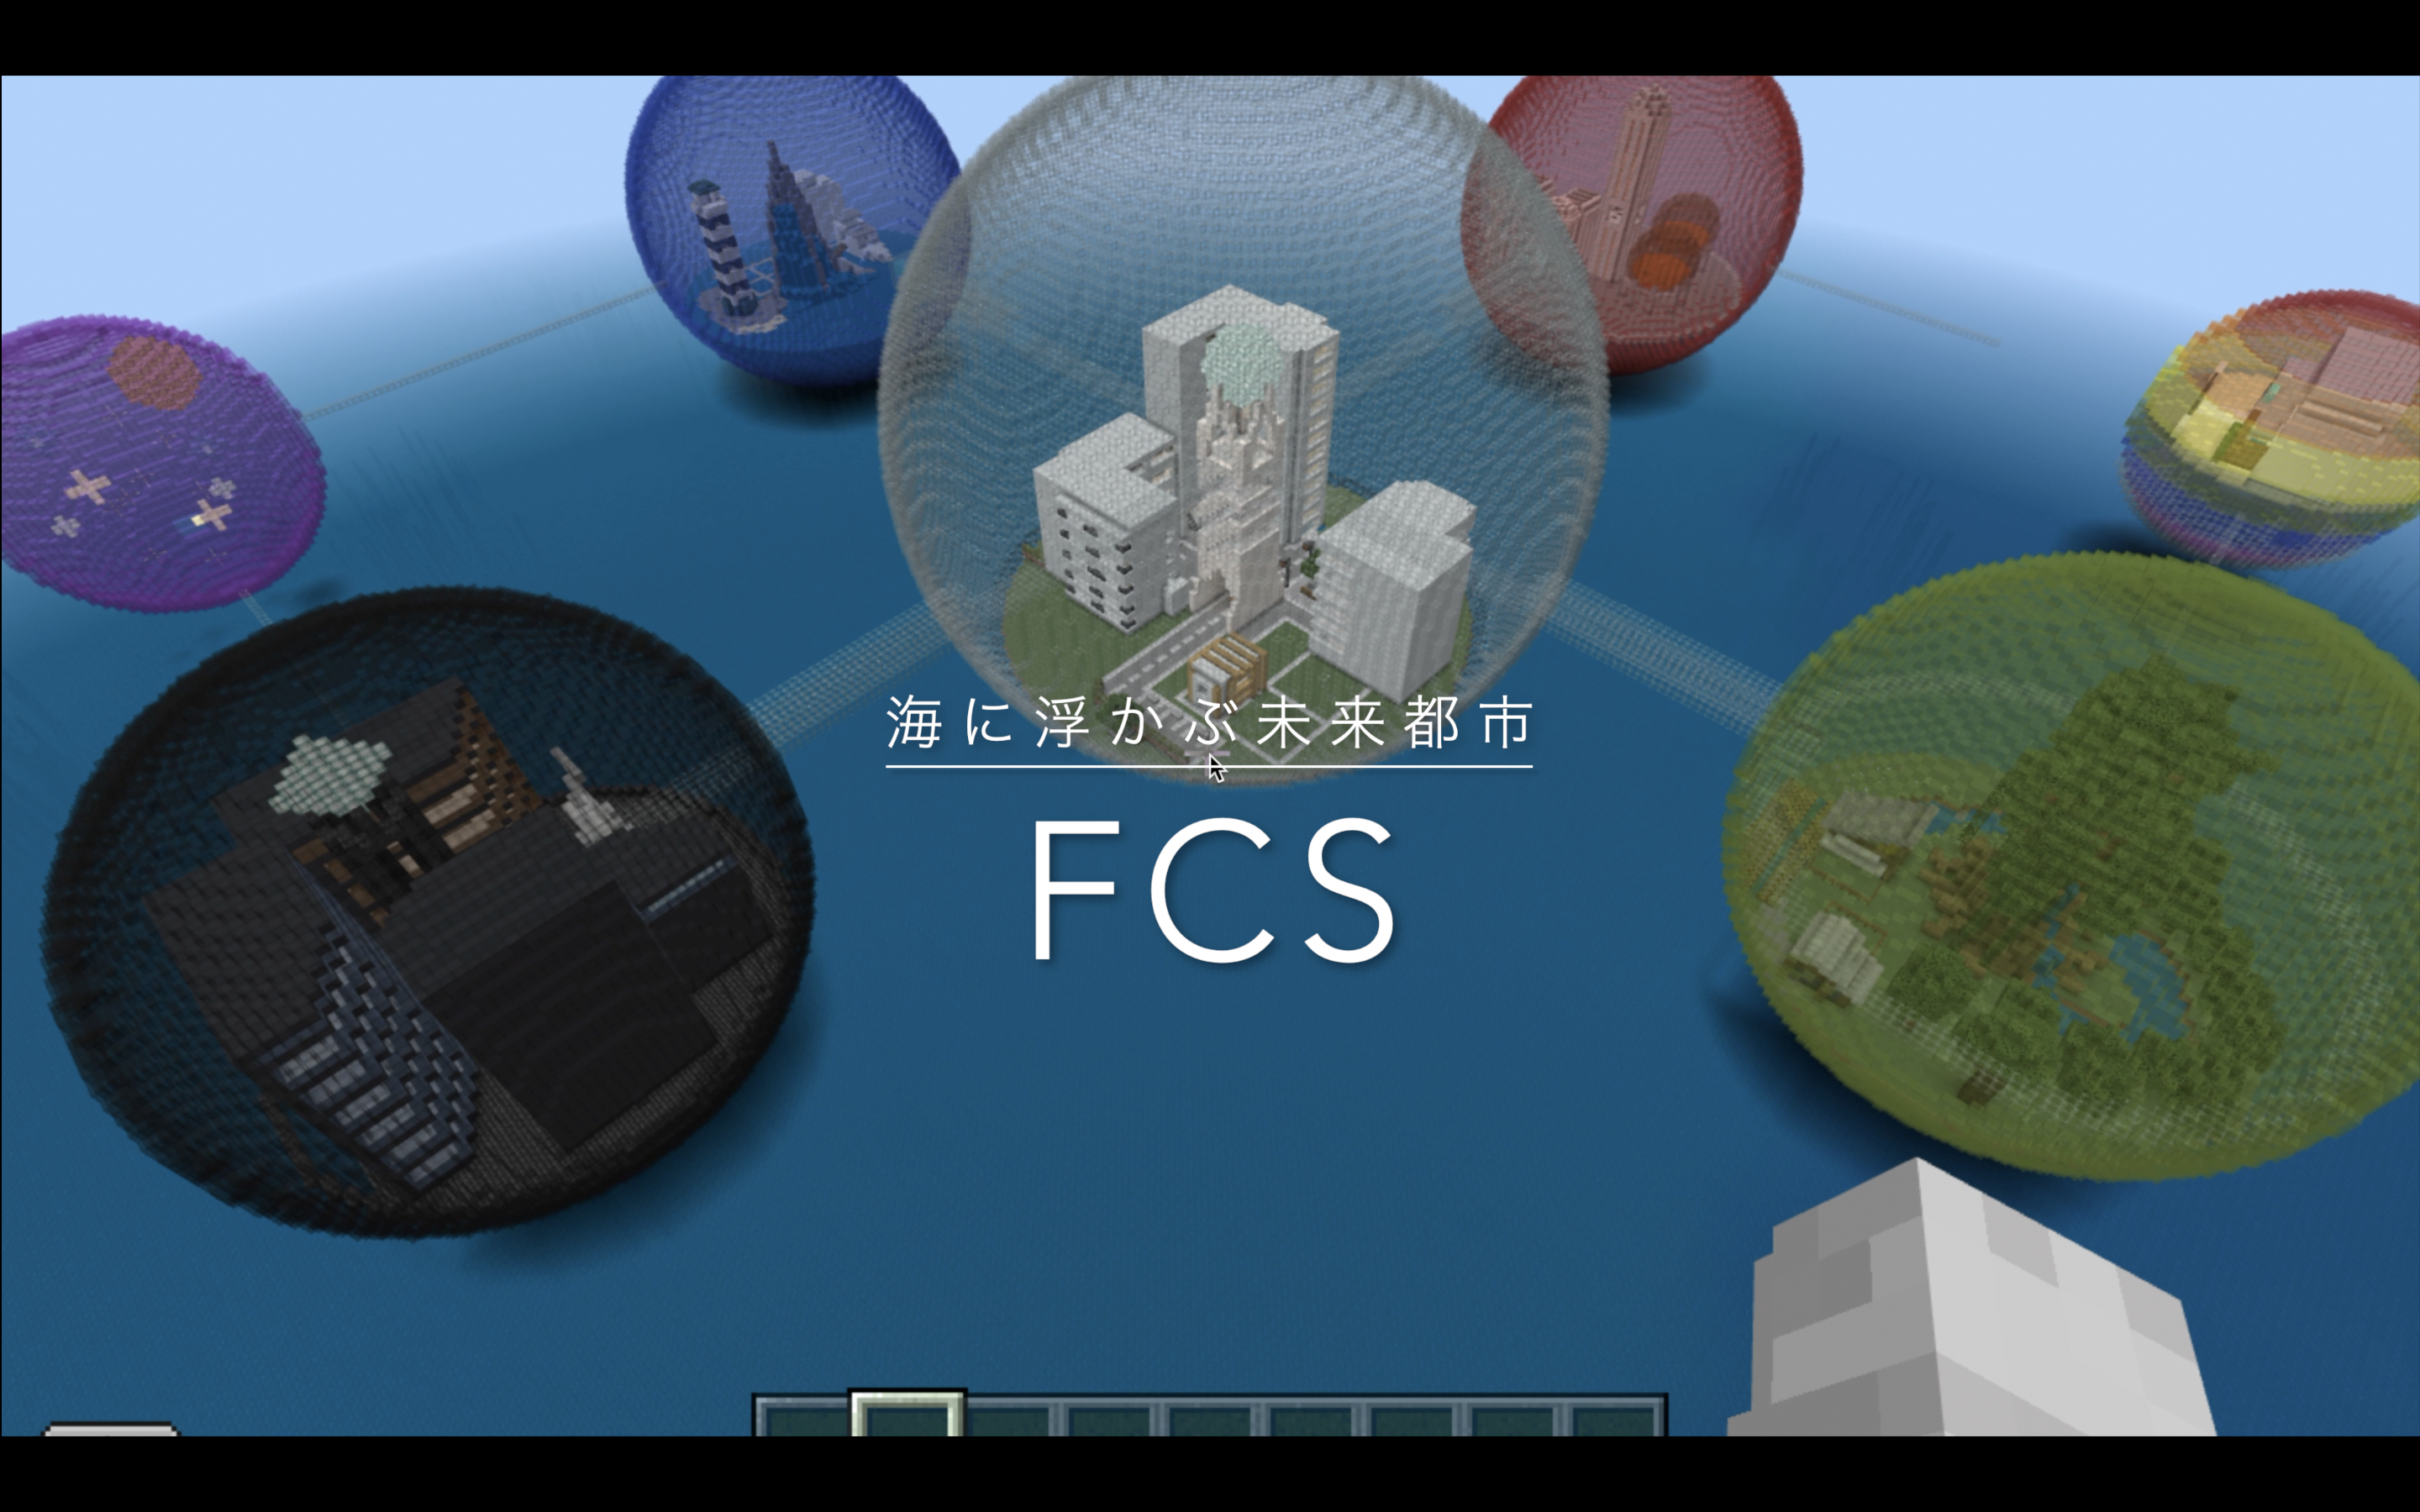 FCS(Futuristic city on the sea)